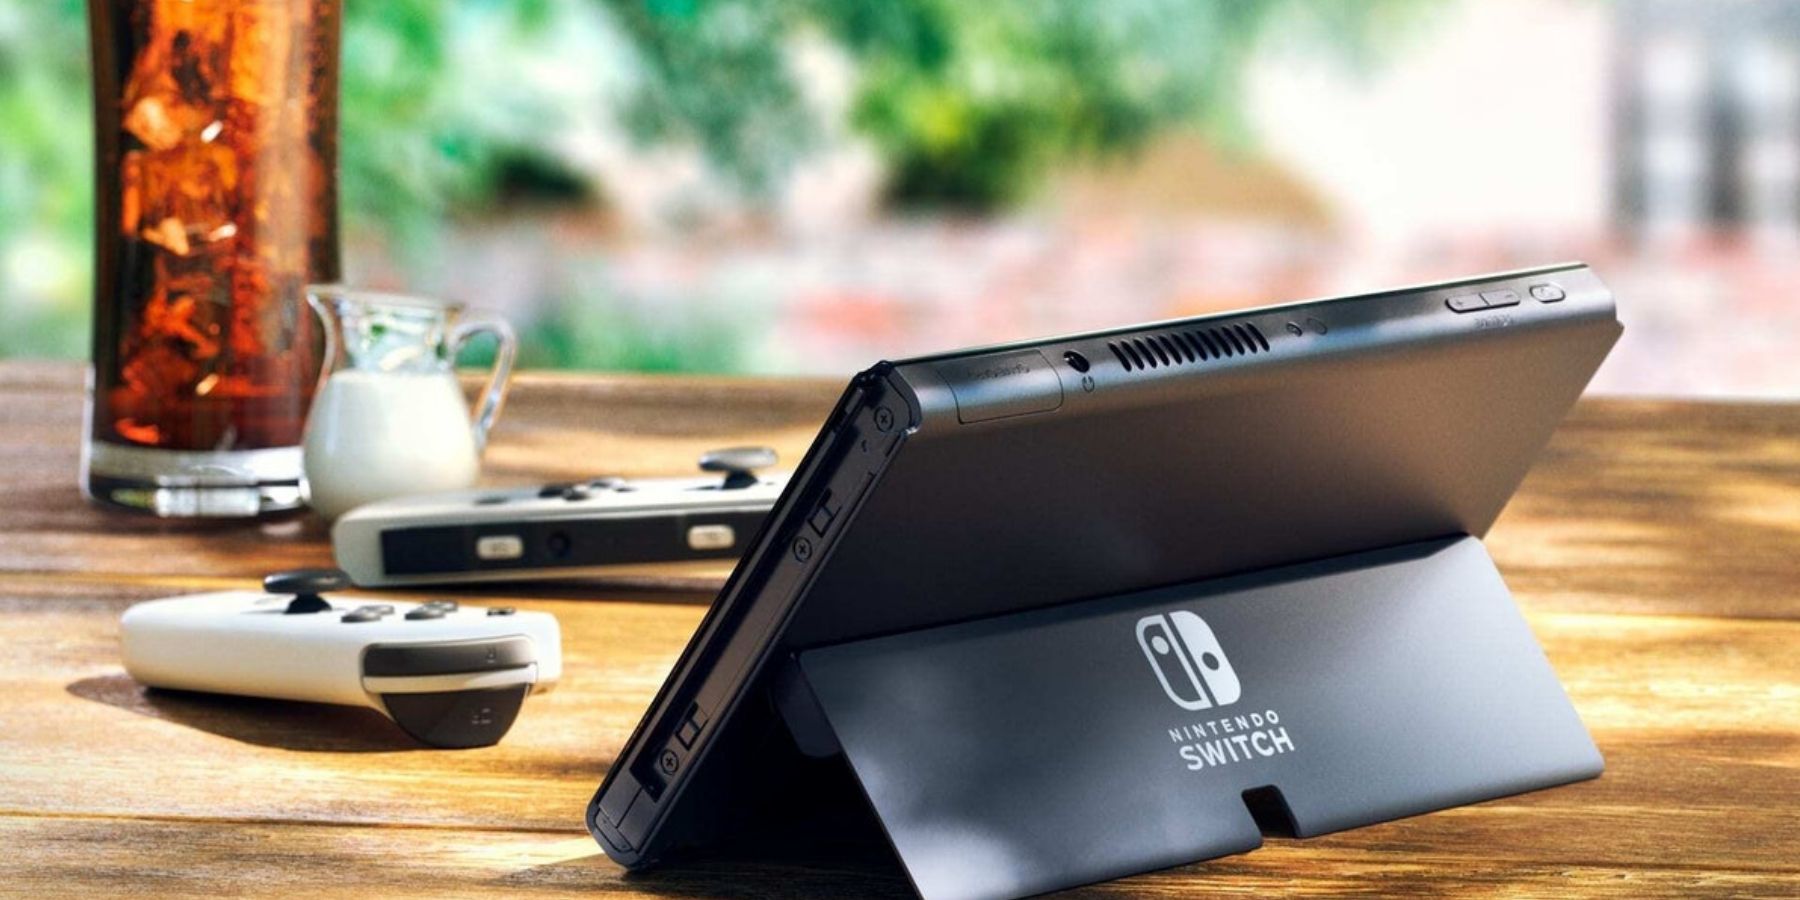 O switch OLED da Nintendo foi originalmente concebido para ter capacidade de 4K